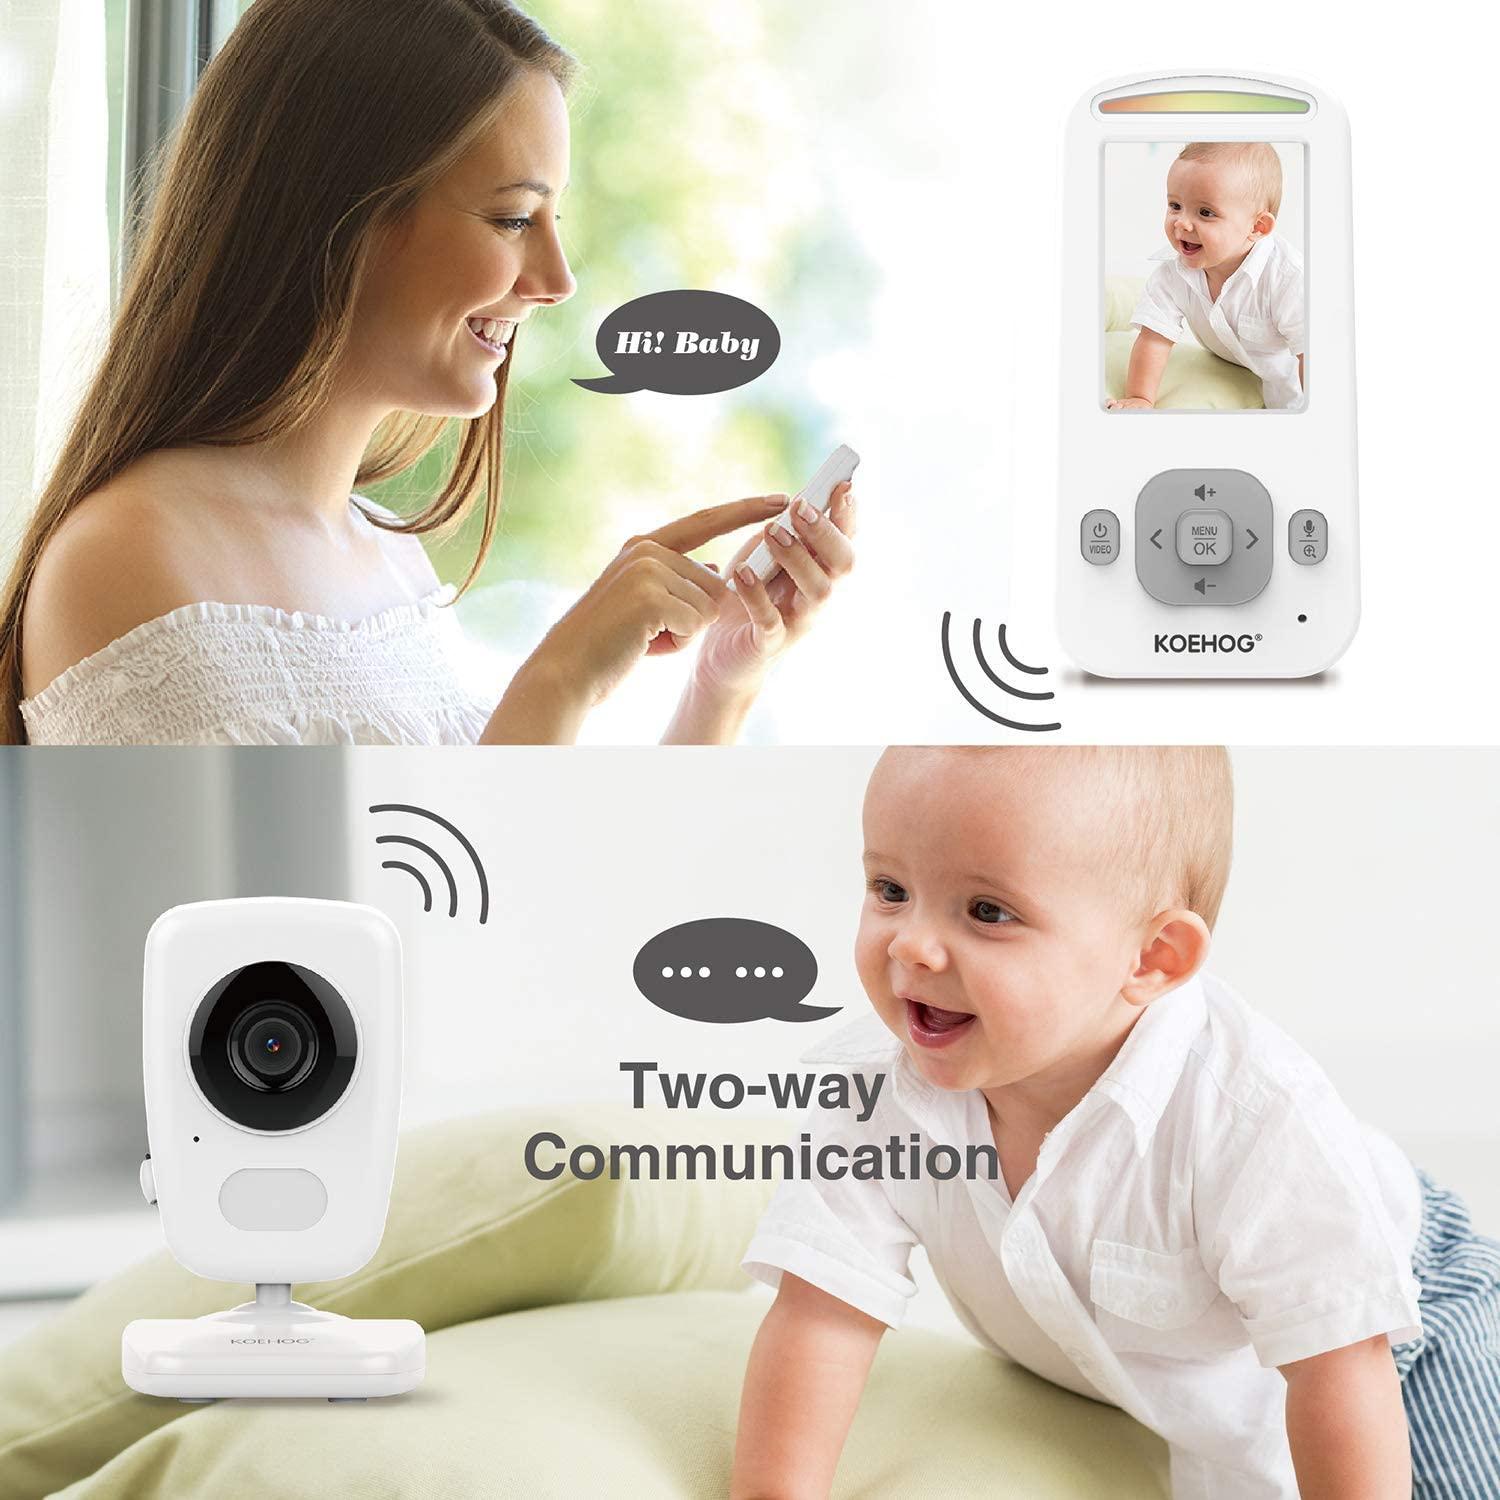 AXVUE E632 Video Baby Monitor